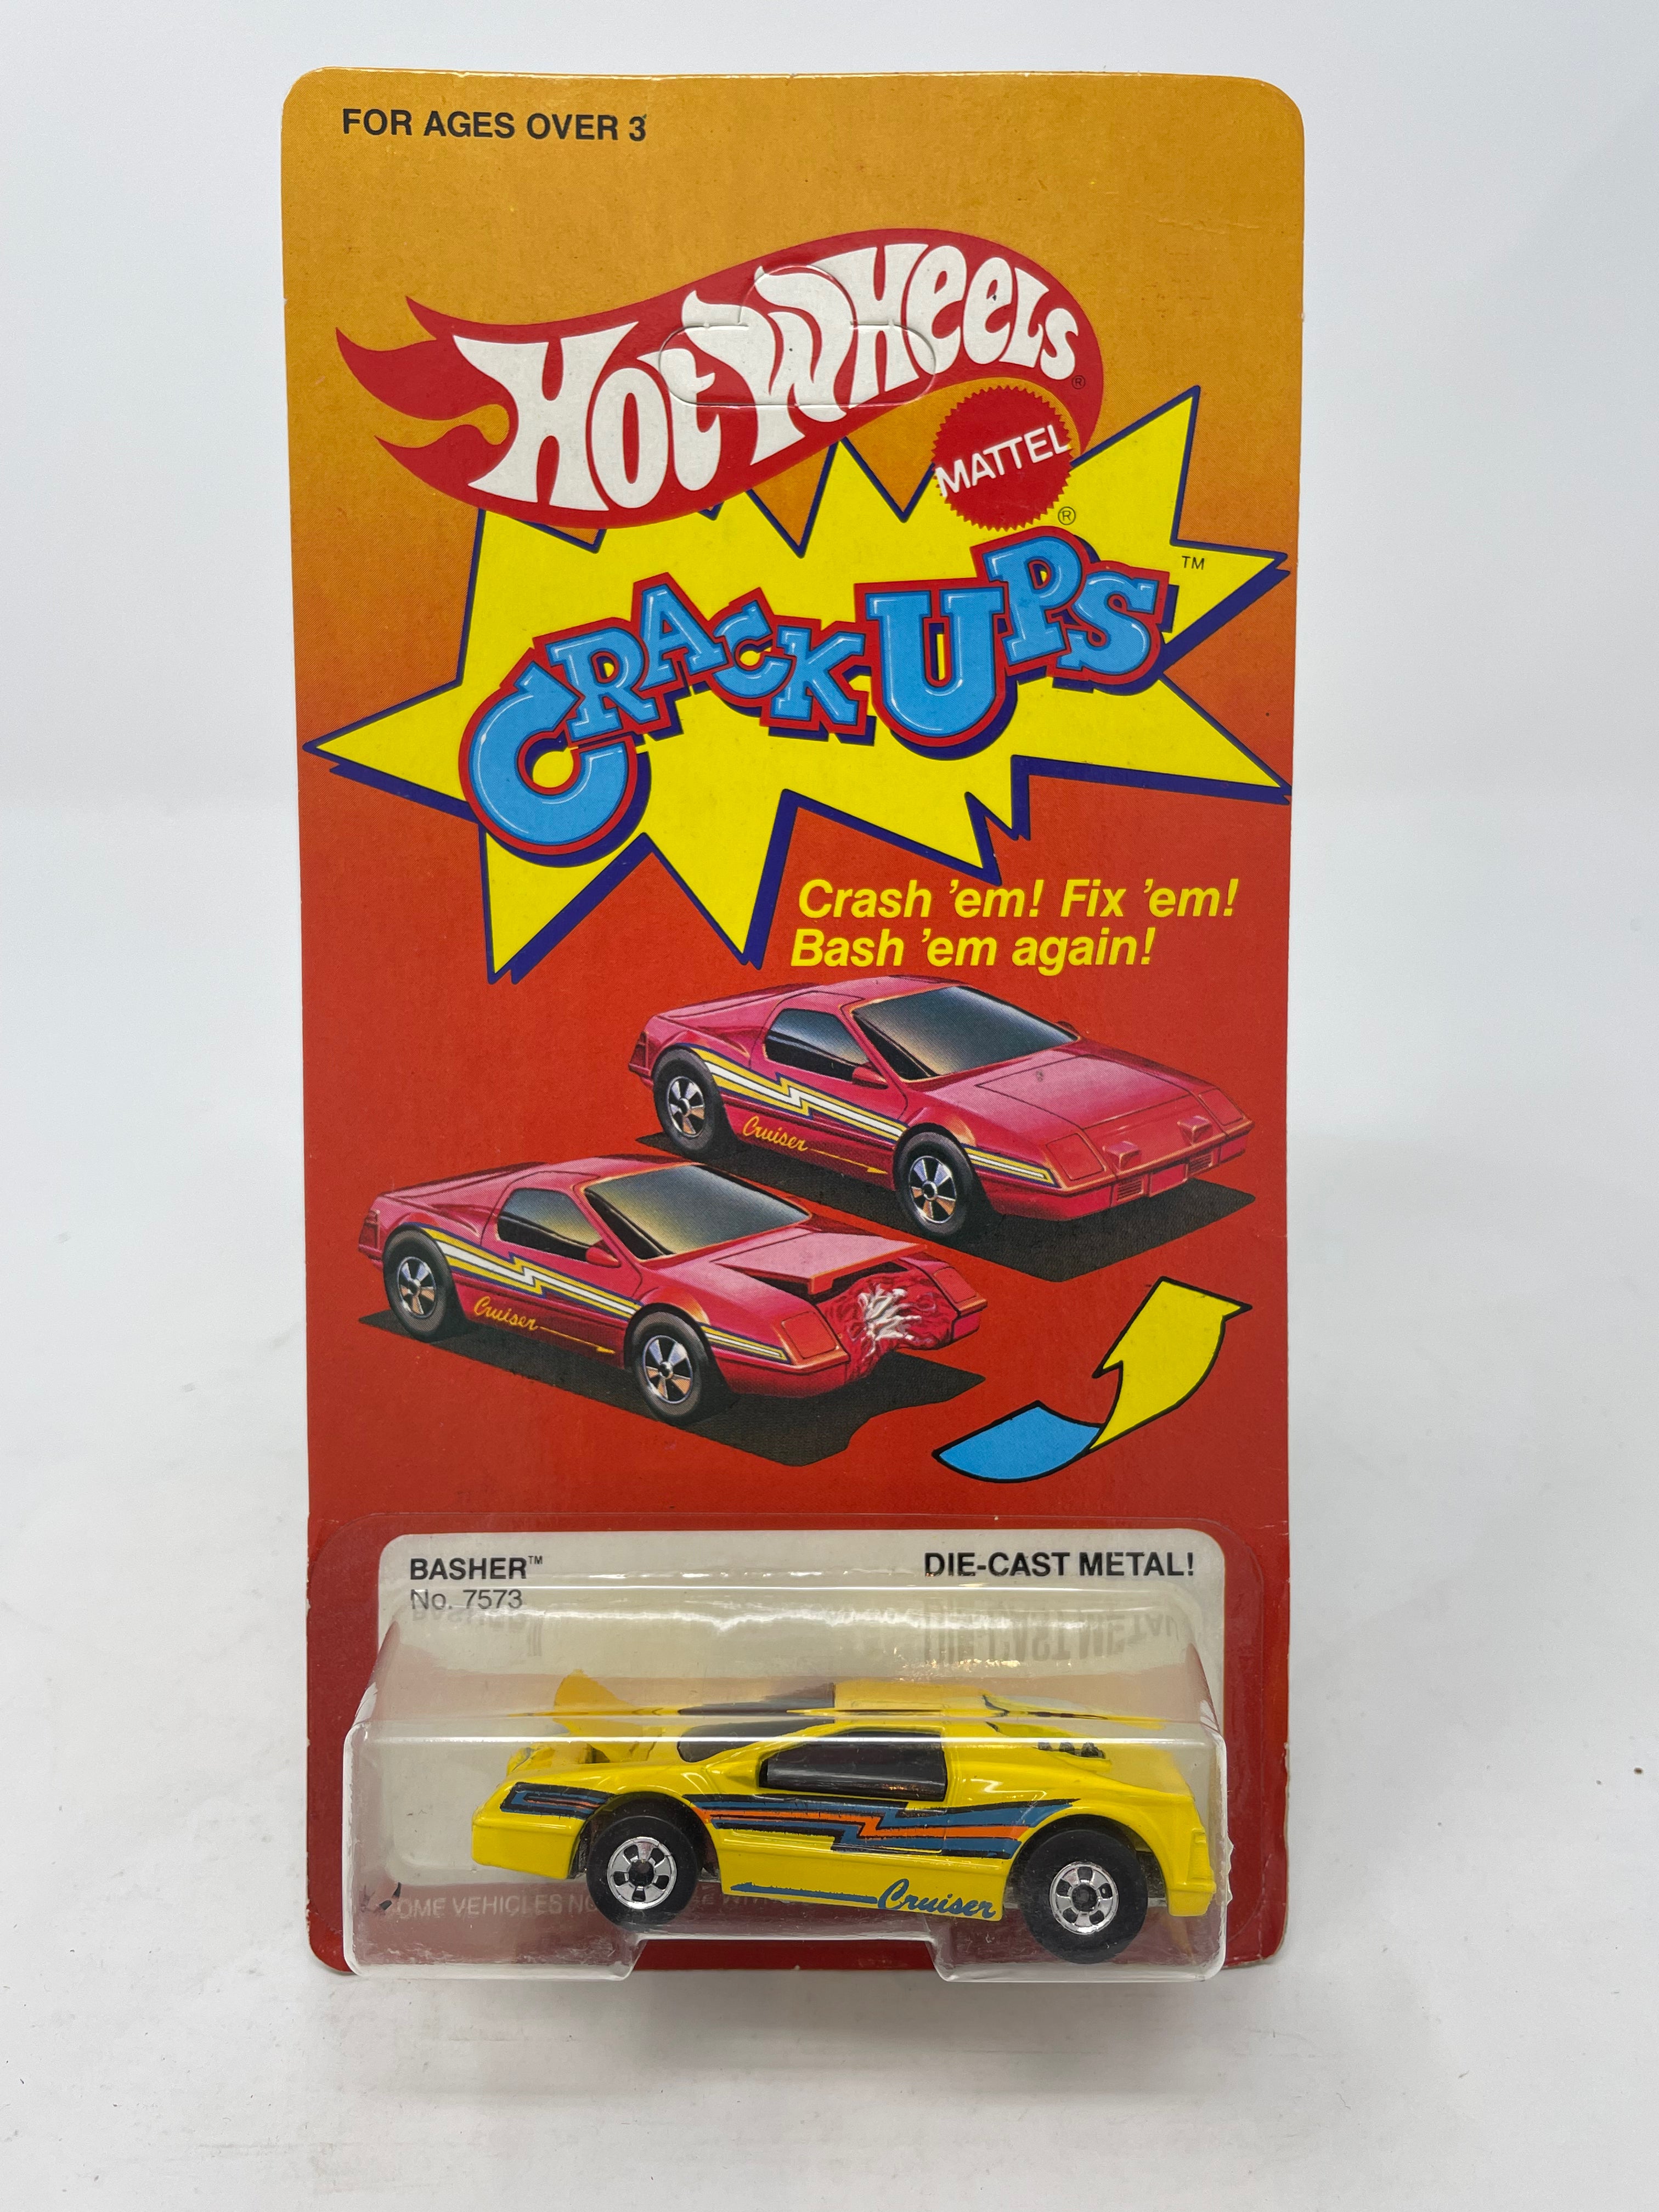 3 Vintage Hot Wheels / Crash Crack up Cars / Issued 1983 & 